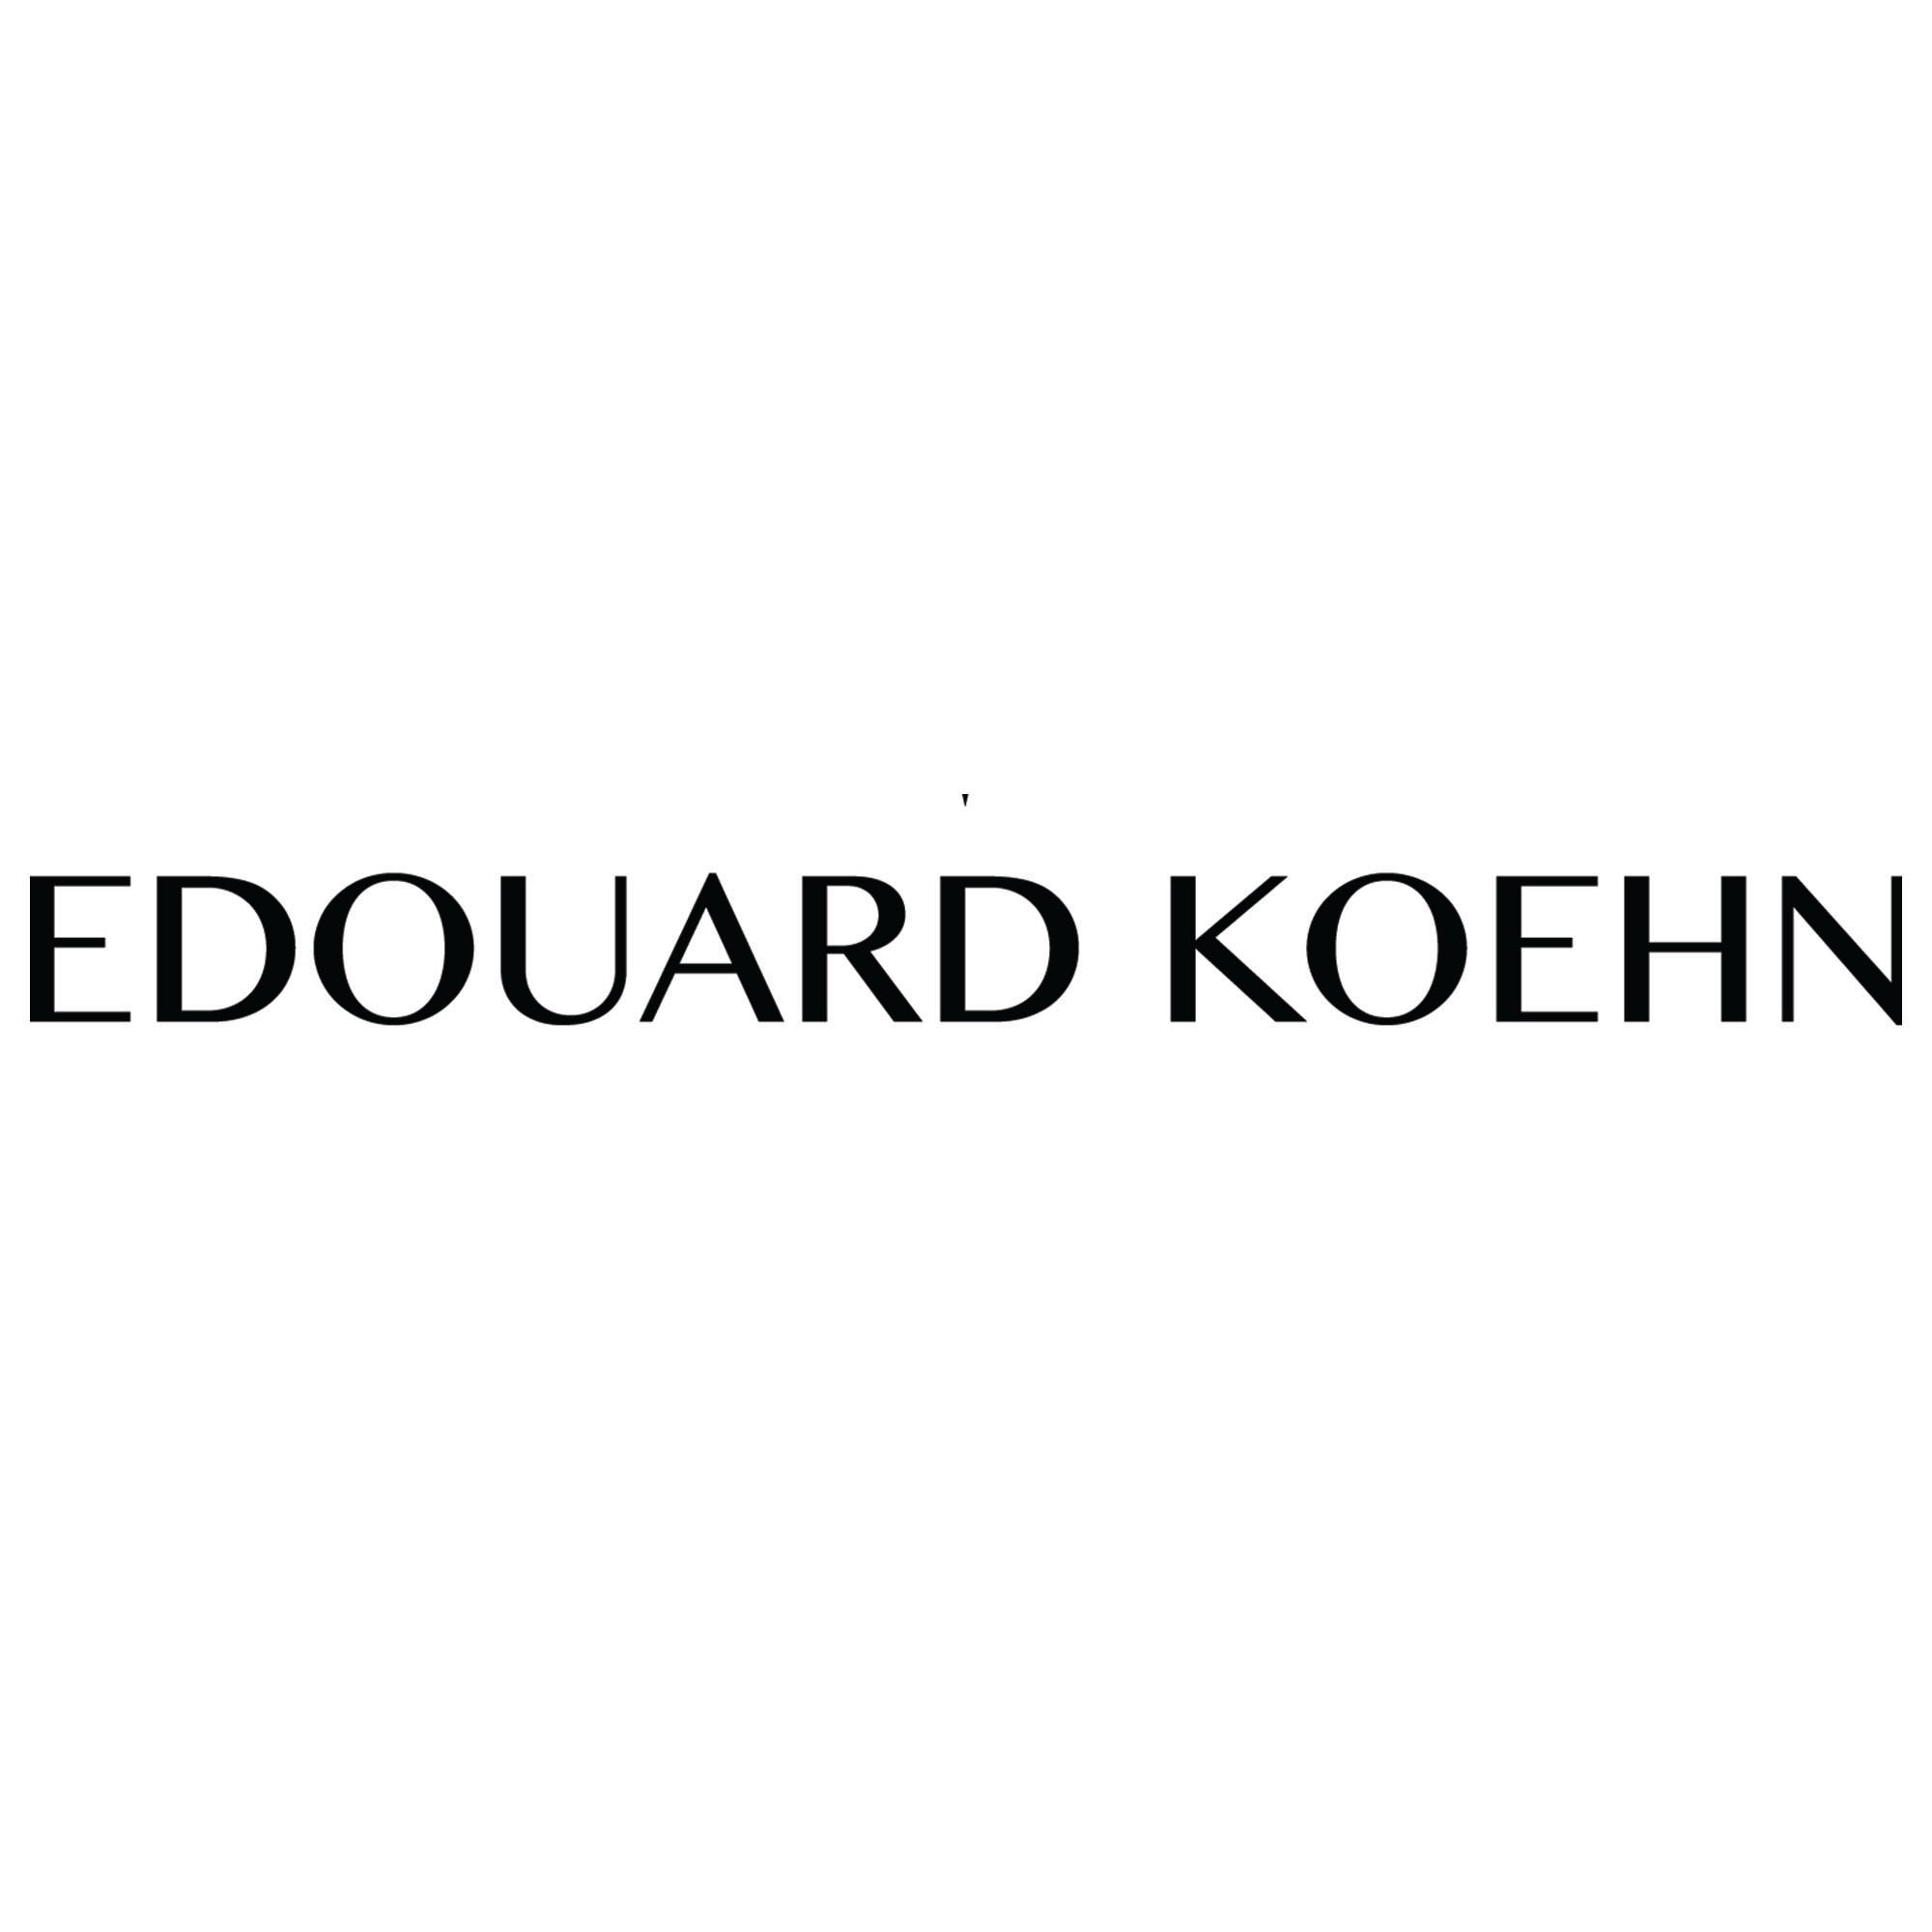 Edoward Koehn